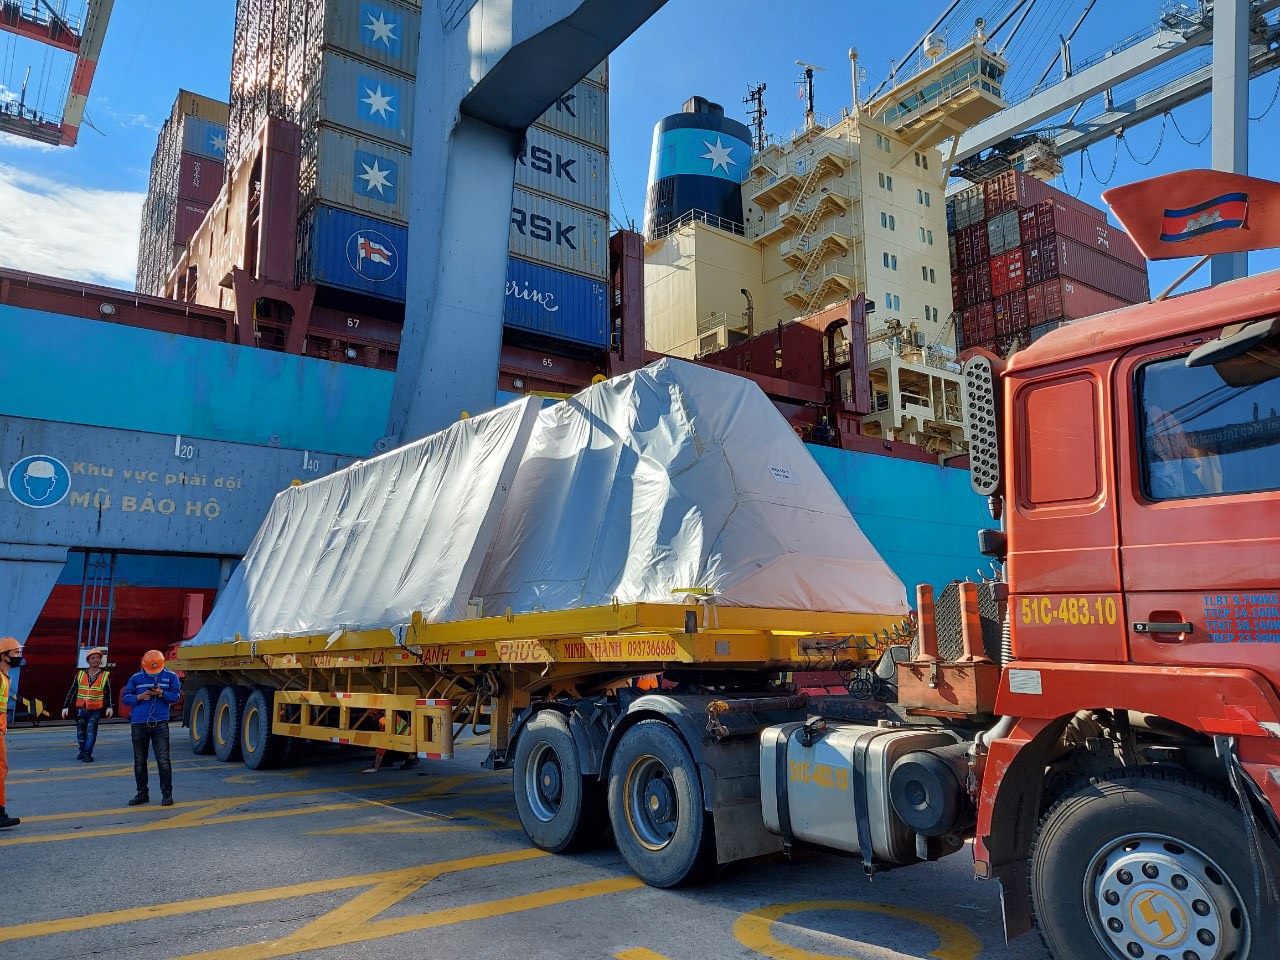 Cảng CMIT đã thiết lập kỷ lục mới trong ngành khai thác cảng biển Việt Nam về năng suất xếp dỡ, đạt 214,31 container/giờ khi làm hàng cho tàu YMWISDOM của hãng tàu Yangming. 